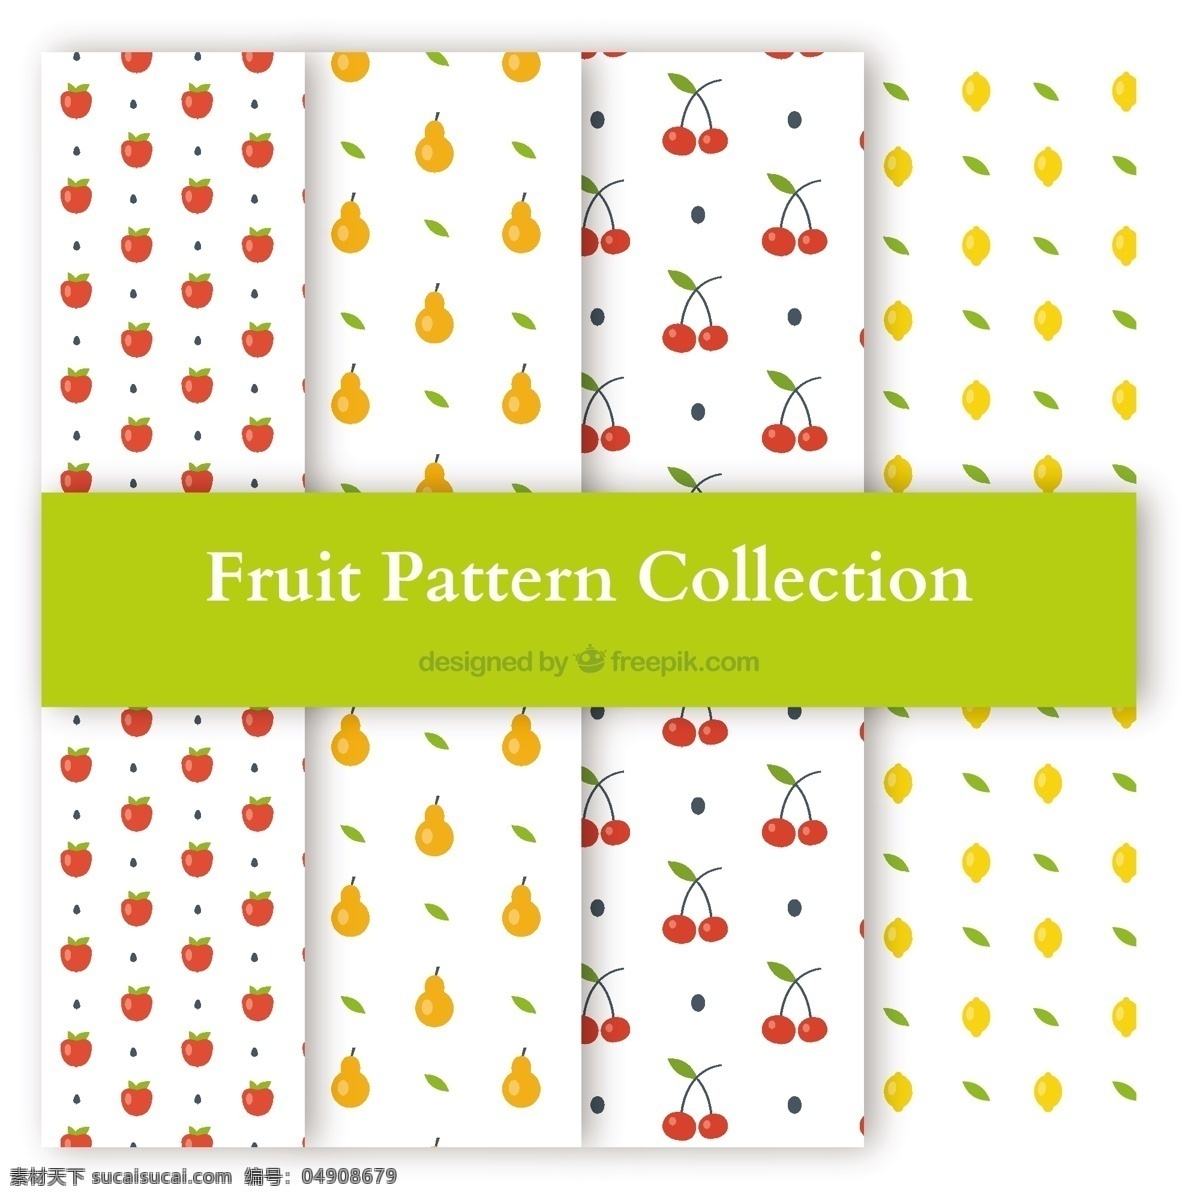 四 种 不同 水果 图案 背景 食物 夏天 颜色 苹果 平板 装饰 丰富多彩 无缝的图案 自然 健康 平坦的设计 自然背景 柠檬